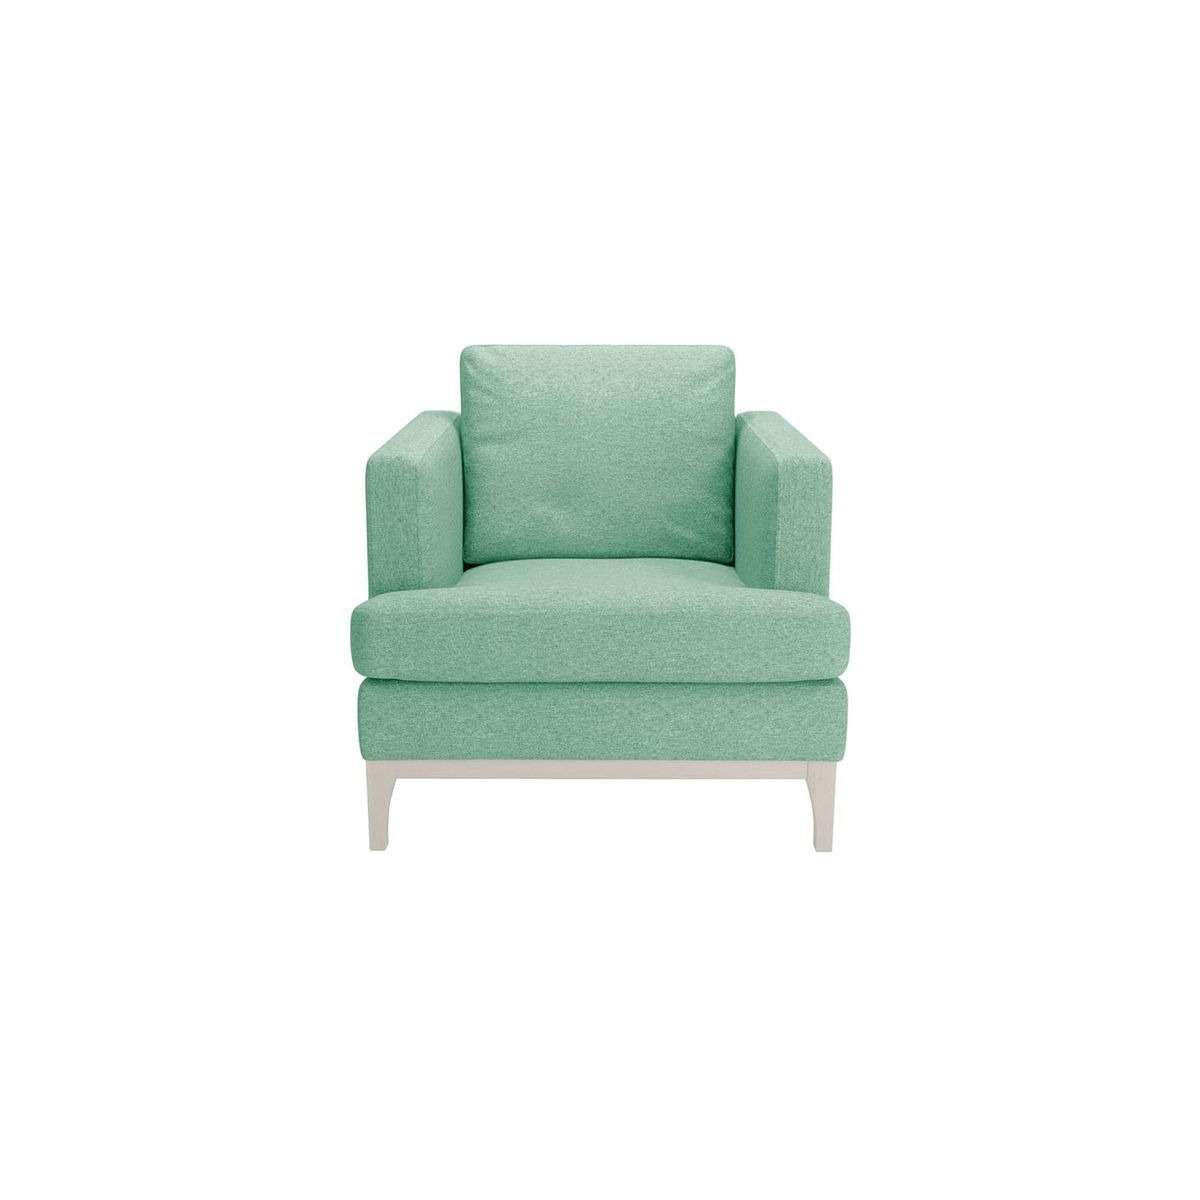 Scarlett Armchair, light blue, Leg colour: white - image 1